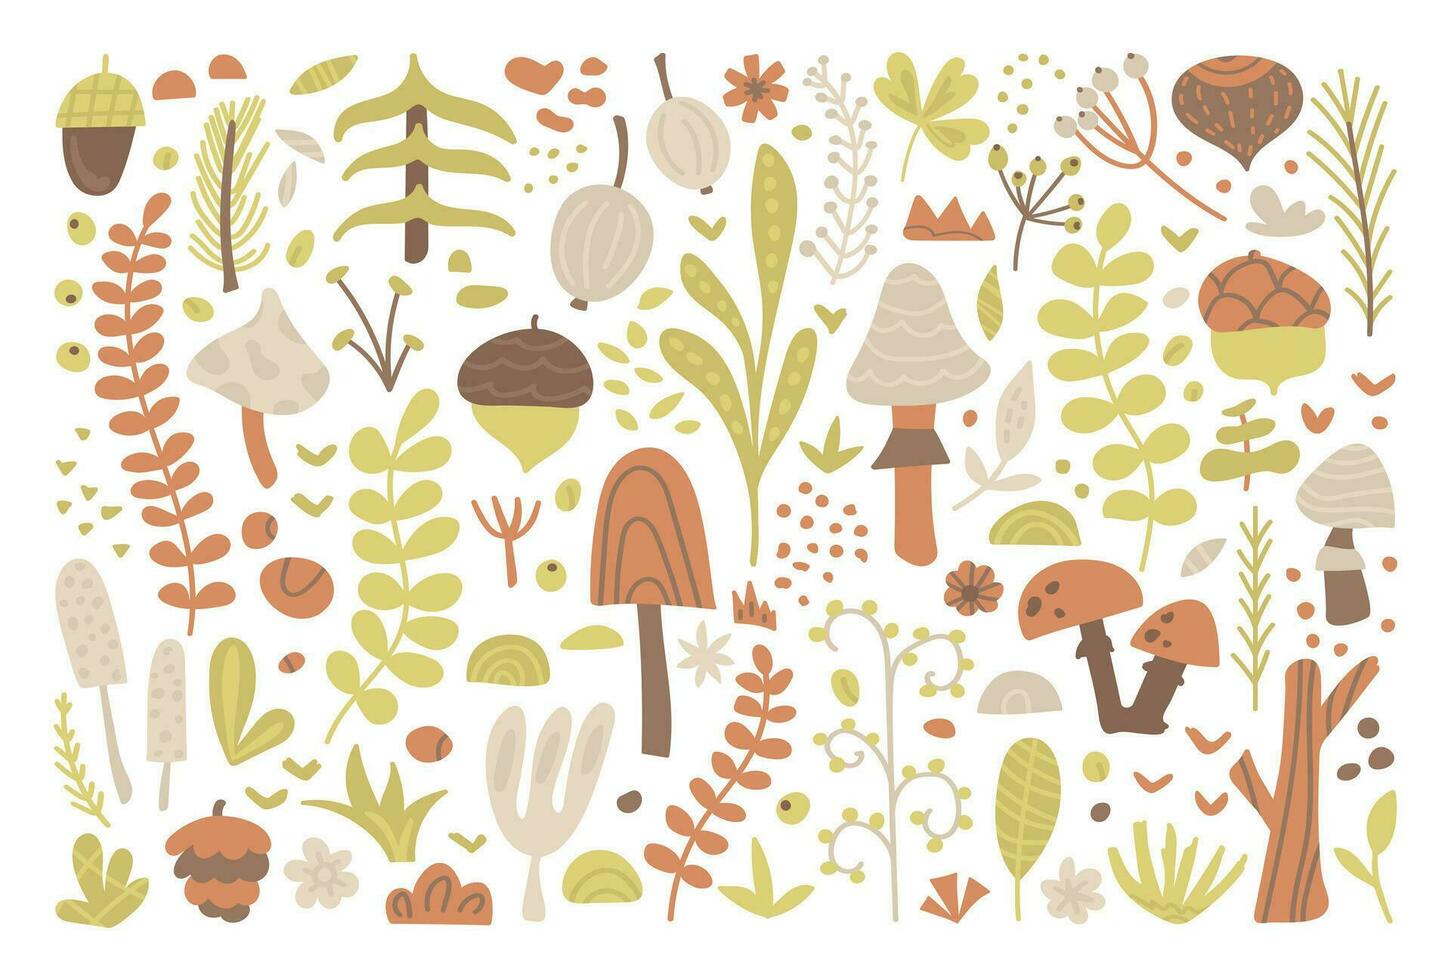 stock vektor grafik av skog örter, löv, bär, svamp, kvistar och ekollon. växter ClipArt, botanisk element uppsättning, natur. samling av platt hand dragen grenar, blommor av de parkera, säsong